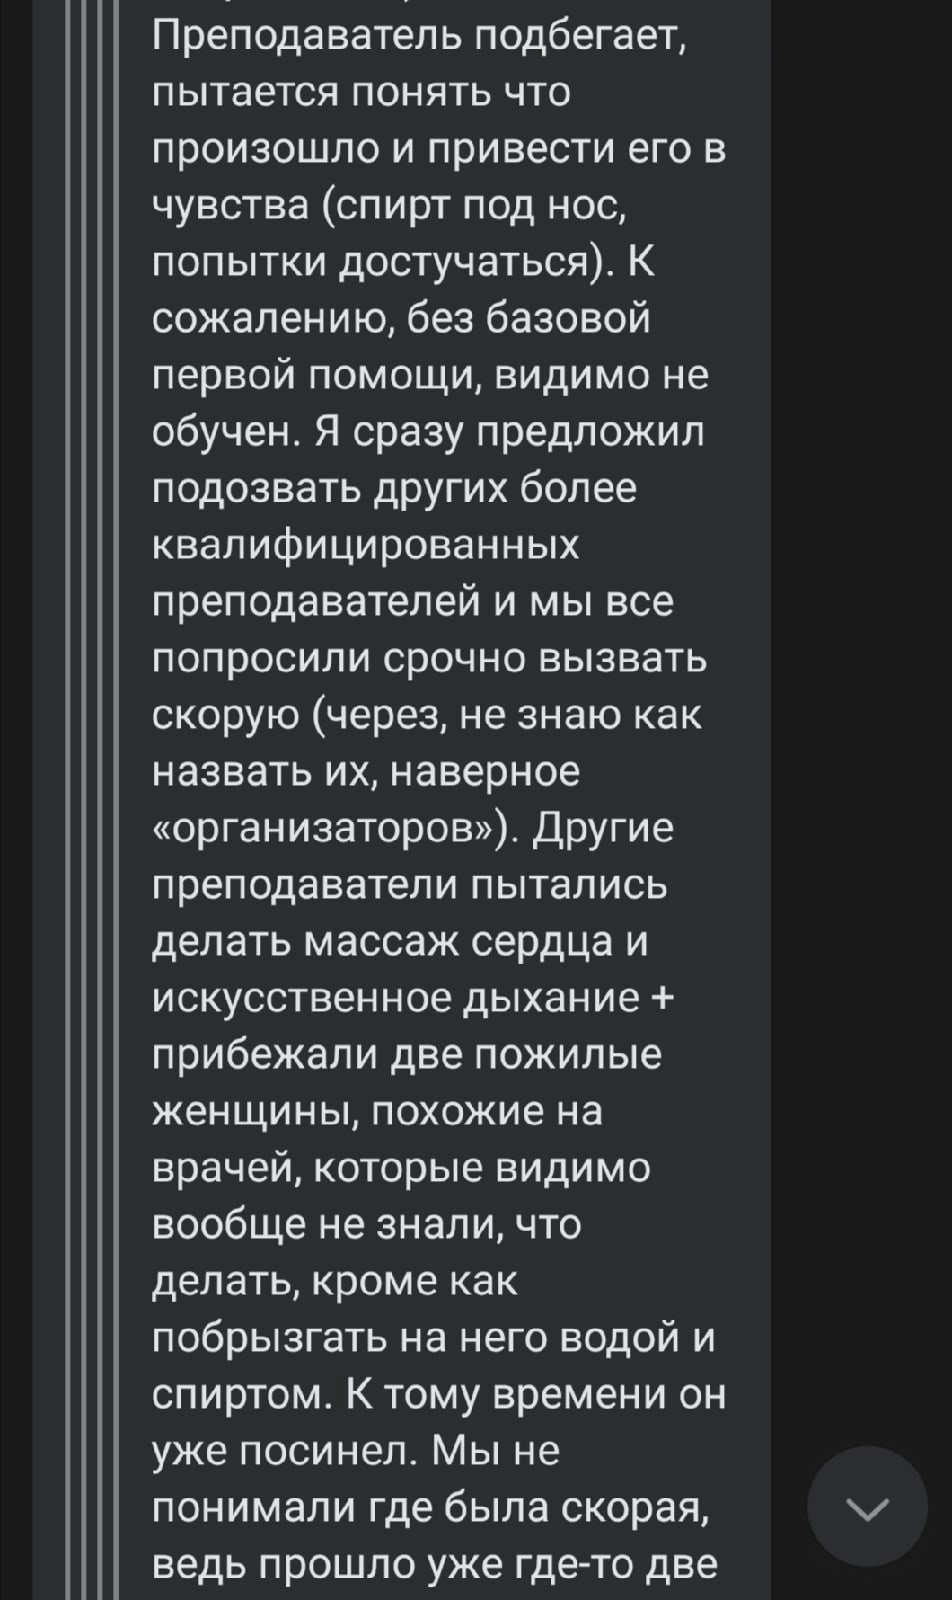 Студенты в пабликах «ВКонтакте» обсуждают случившееся